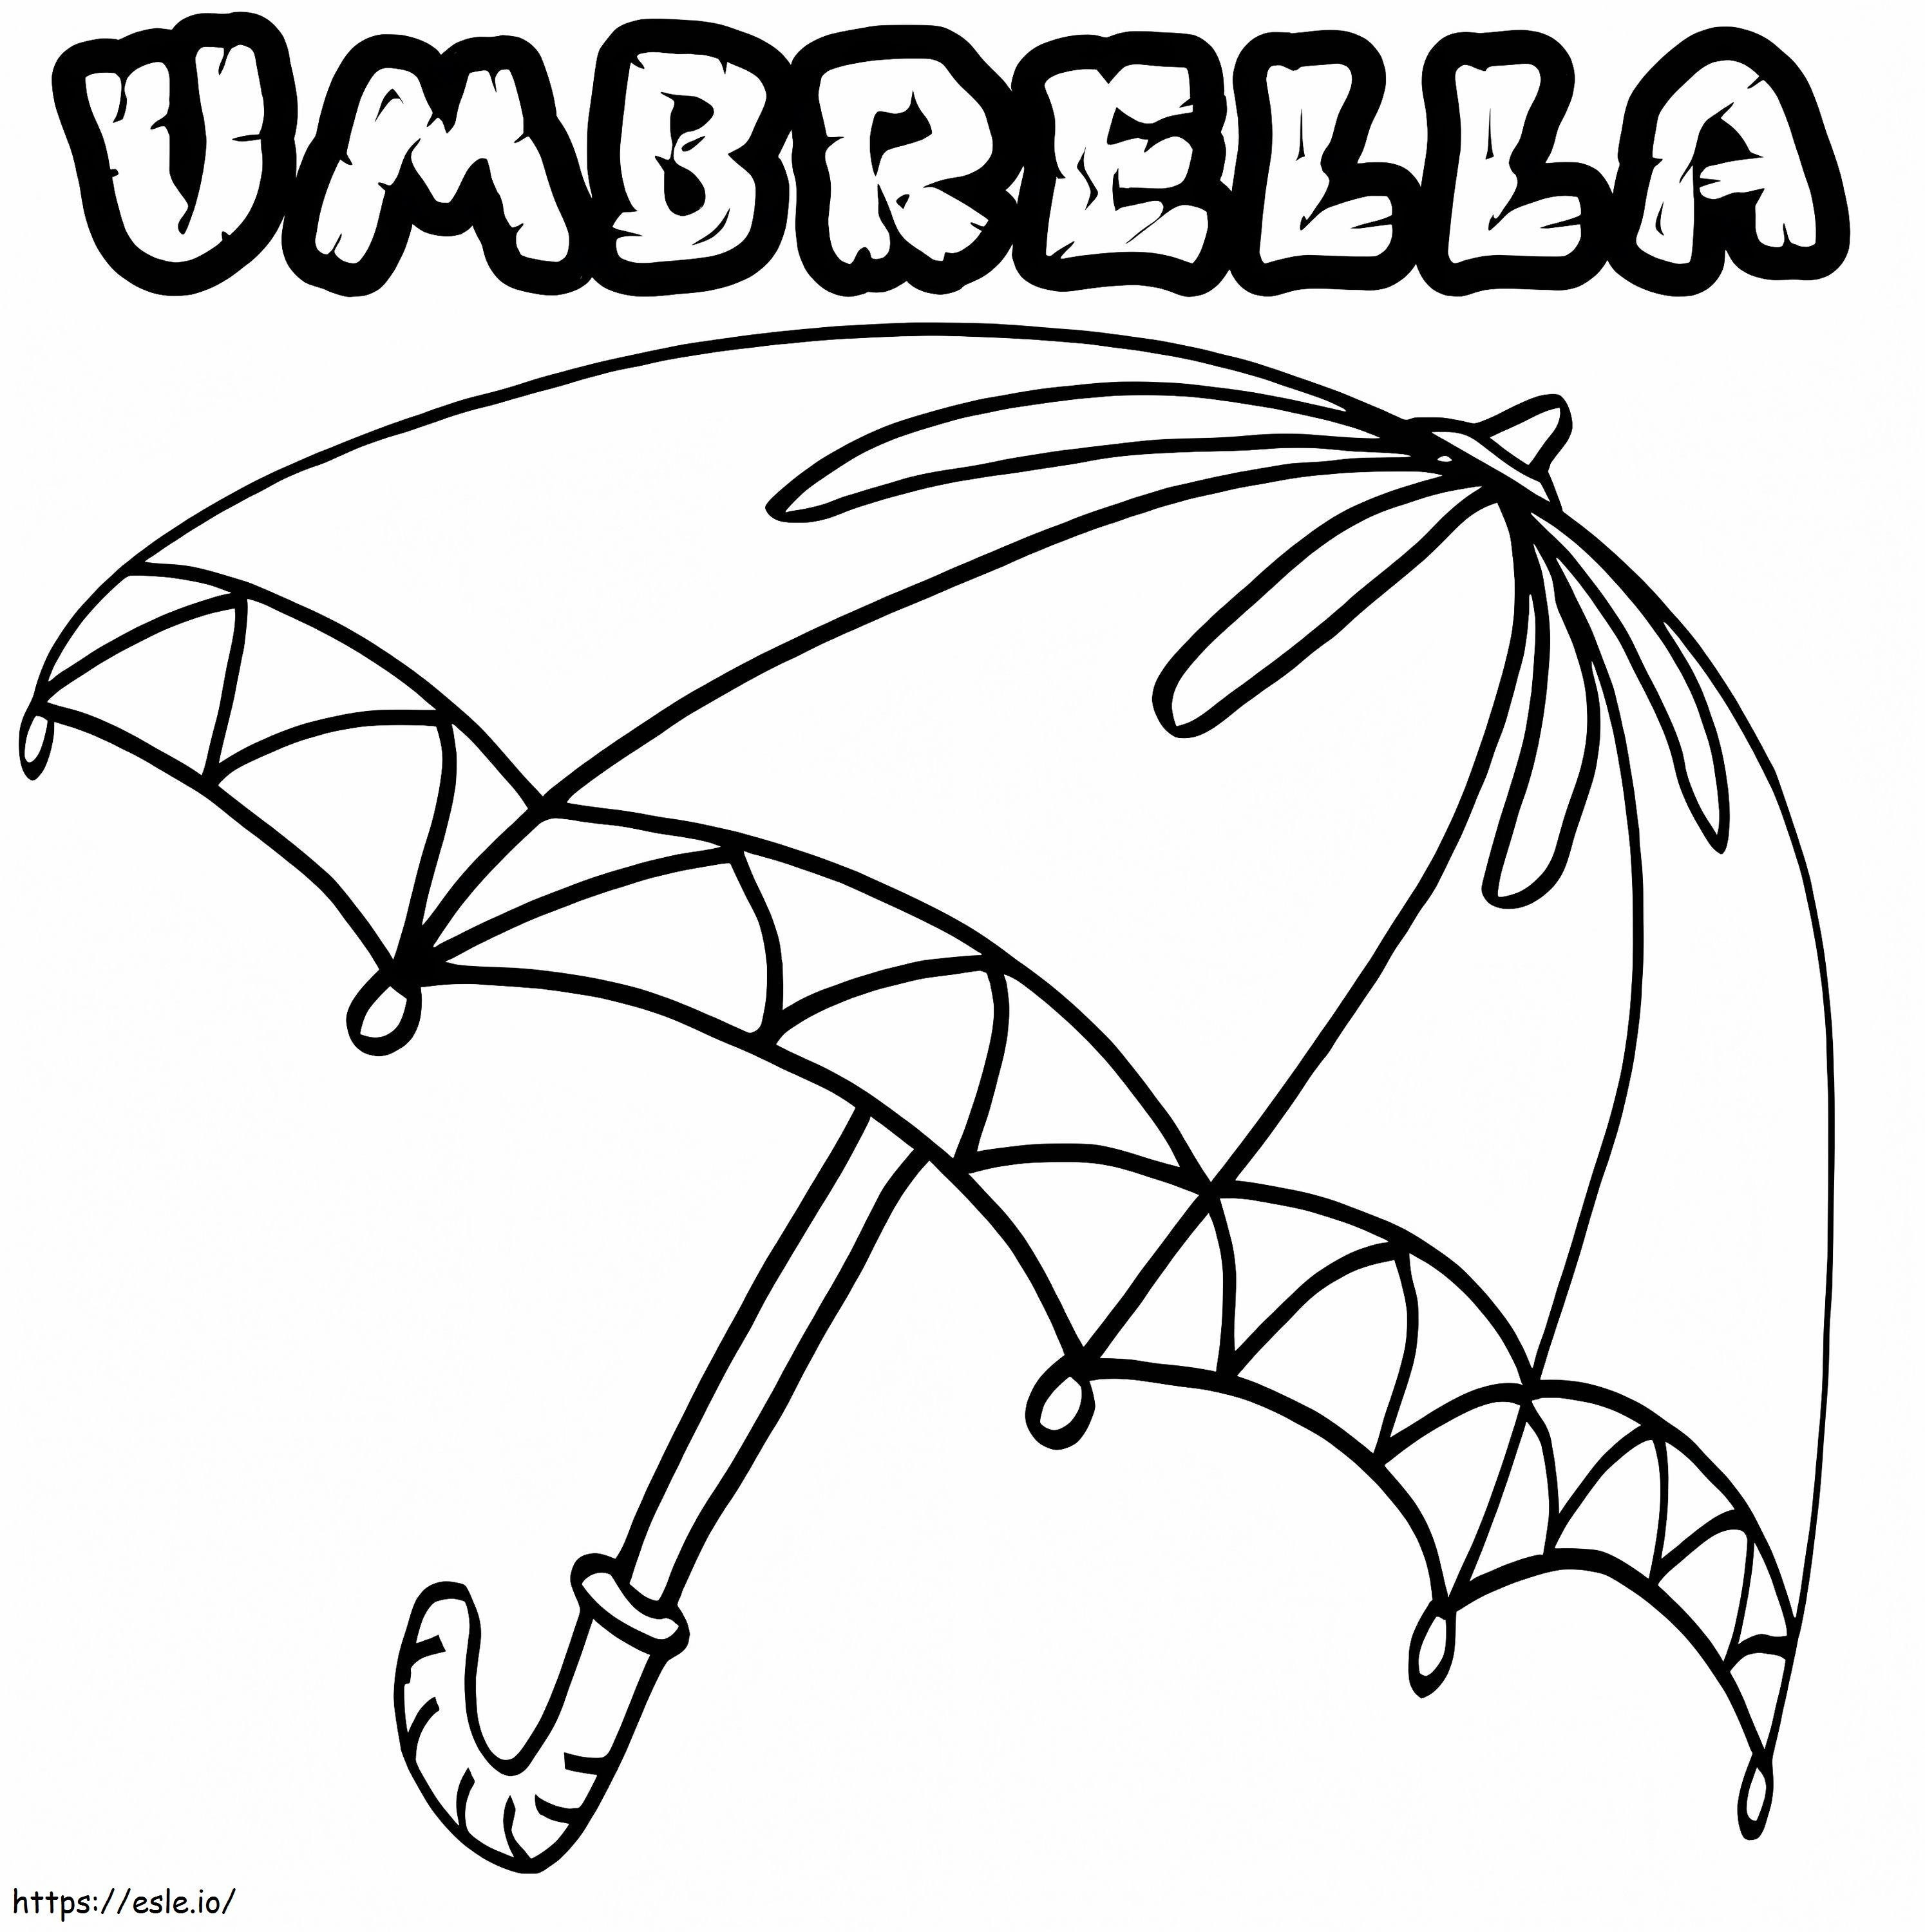 Umbrela 1 de colorat